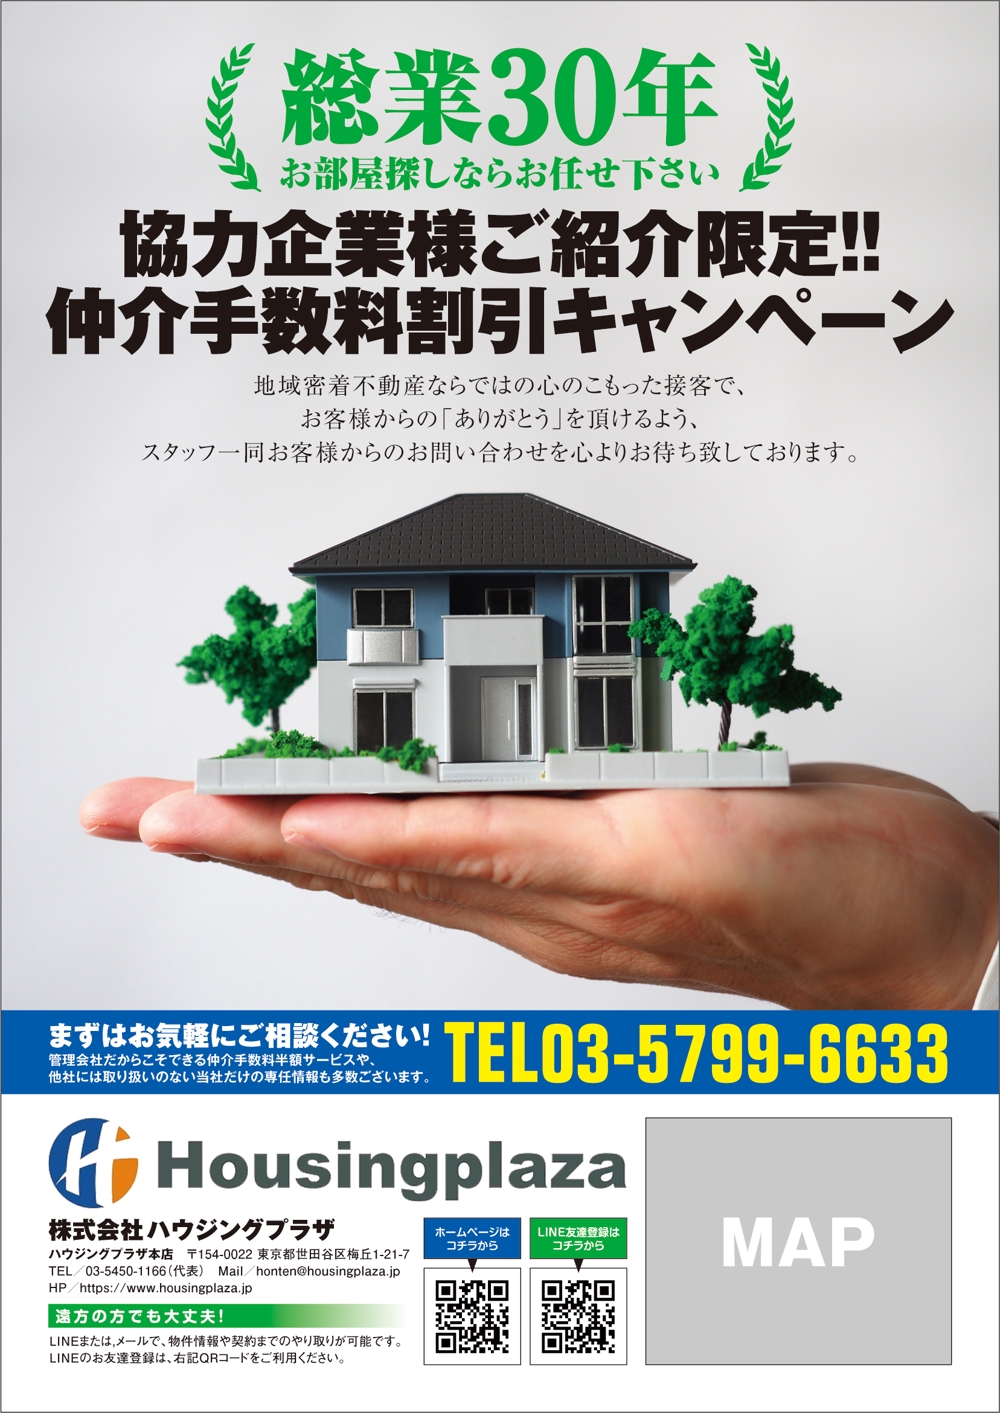 housingplaza2.jpg